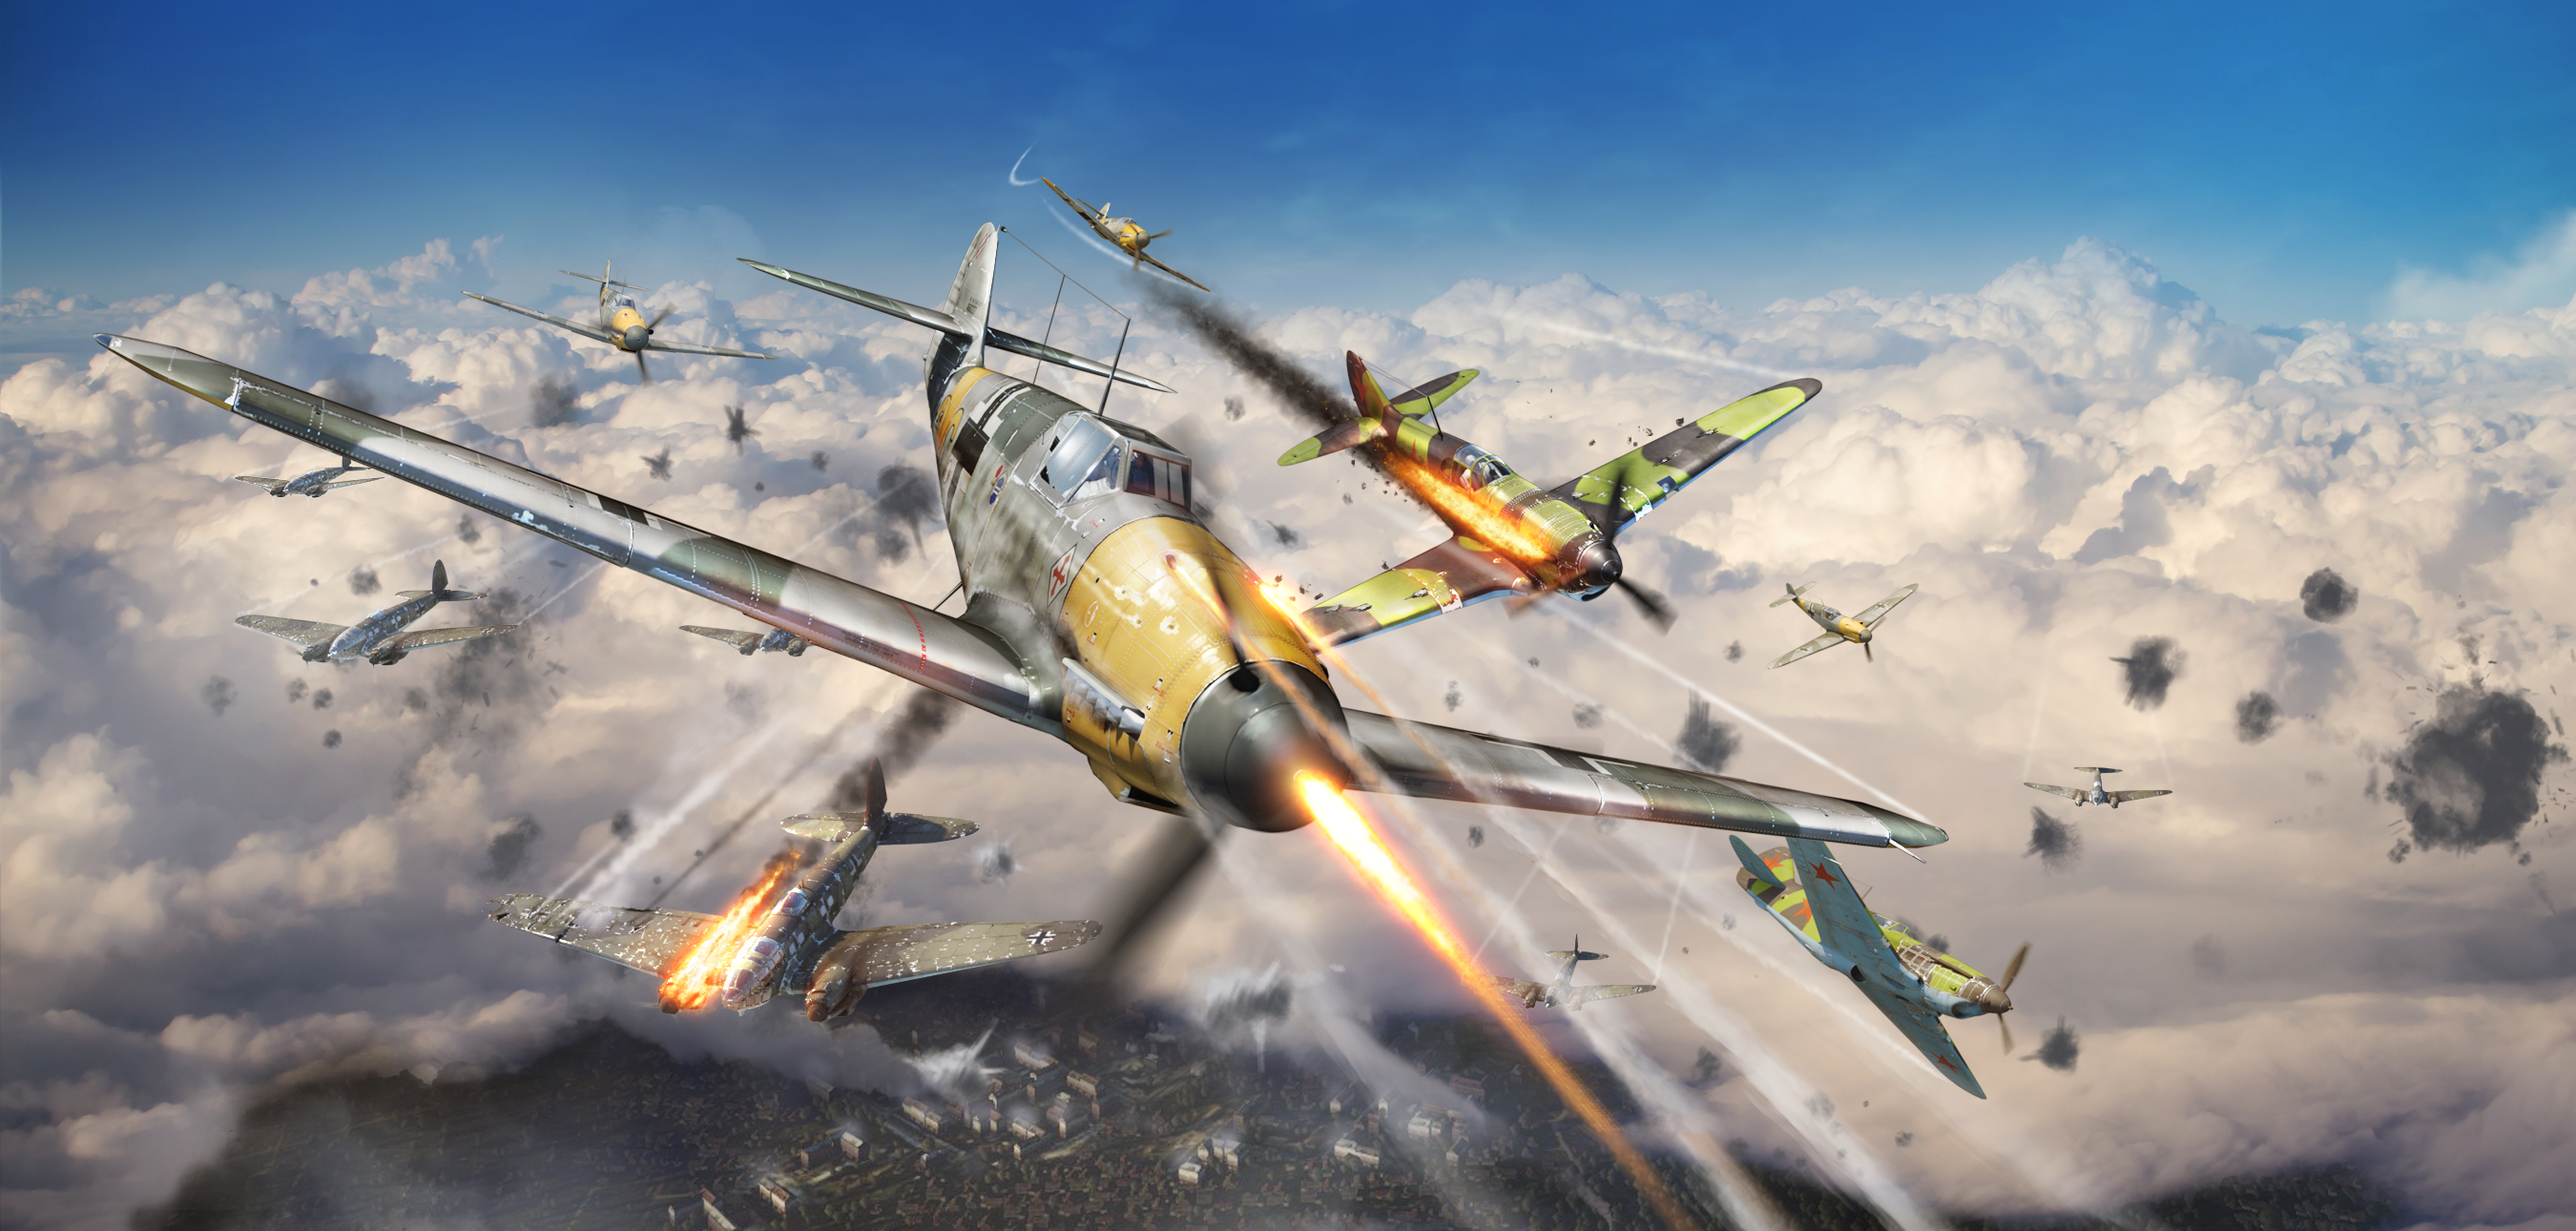 壁紙 War Thunder 飛行機 戦闘機 戦争 発射 ドイツ語 ロシアの 雲 飛翔 ゲーム ダウンロード 写真